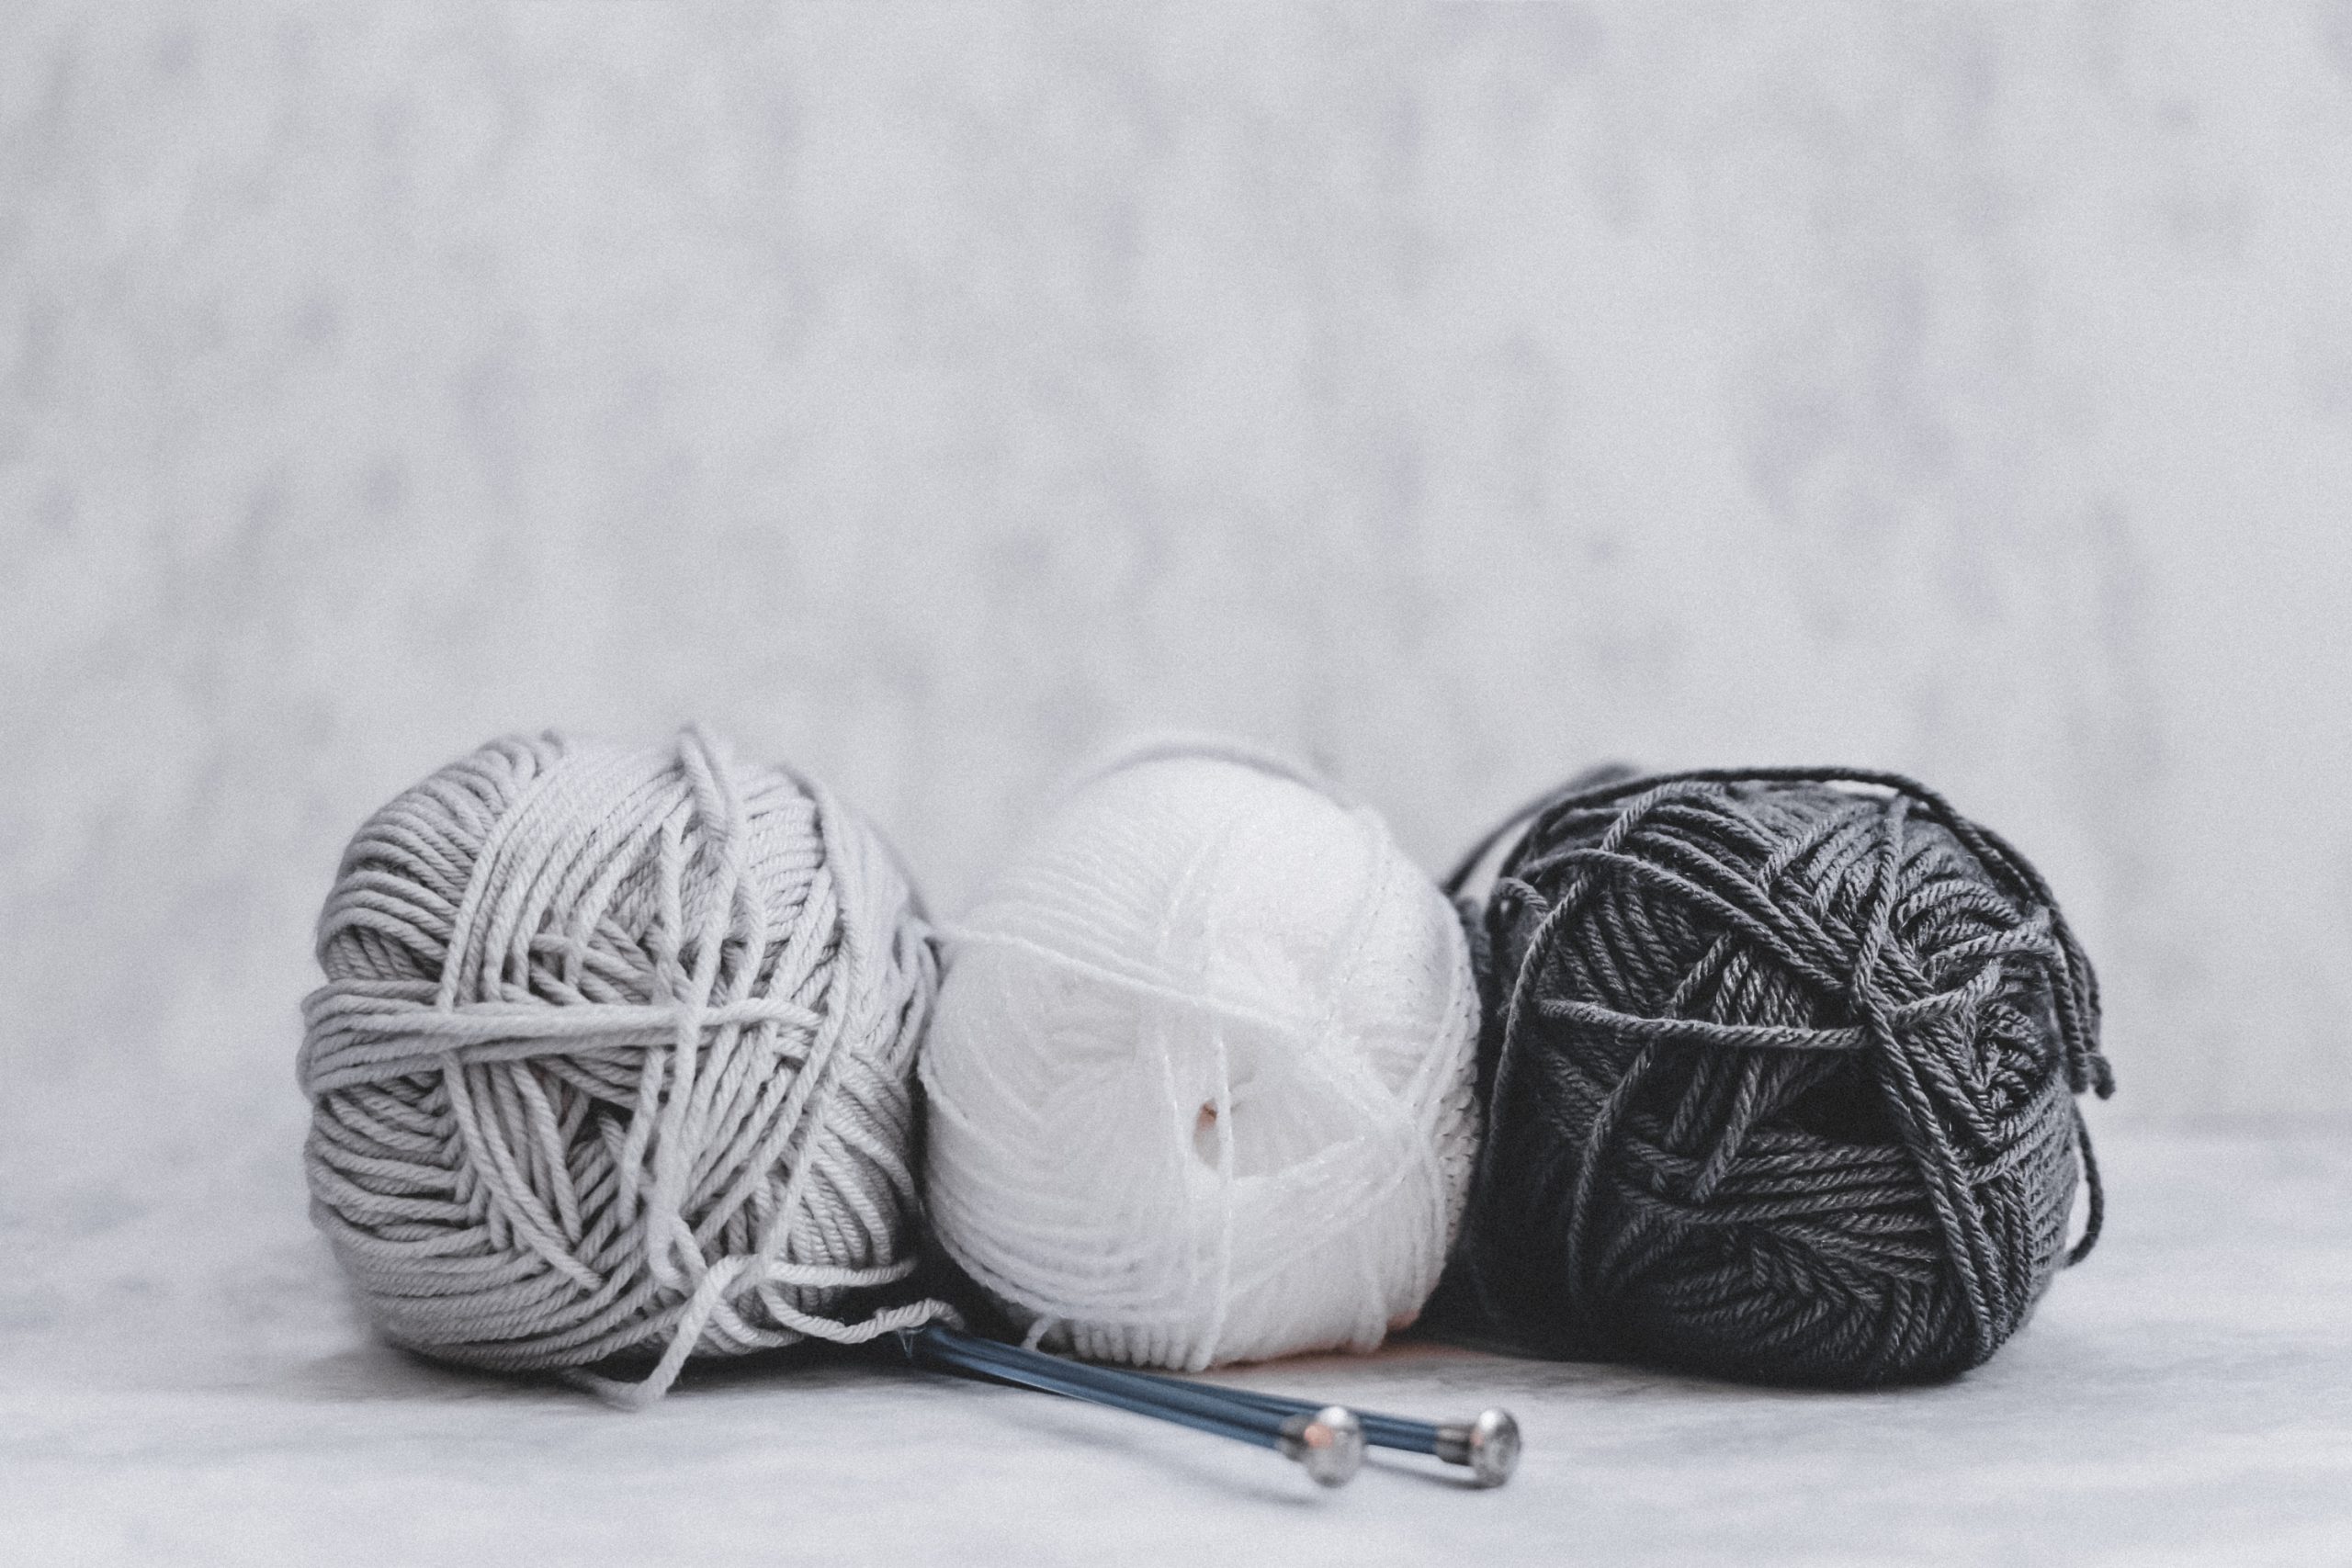 Tres ovillos de lana en color blanco, gris y negro sobre fondo blanco y con dos ajugas de hacer punto. El punch needling es uno de los hobbies y habilidades que quiero probar